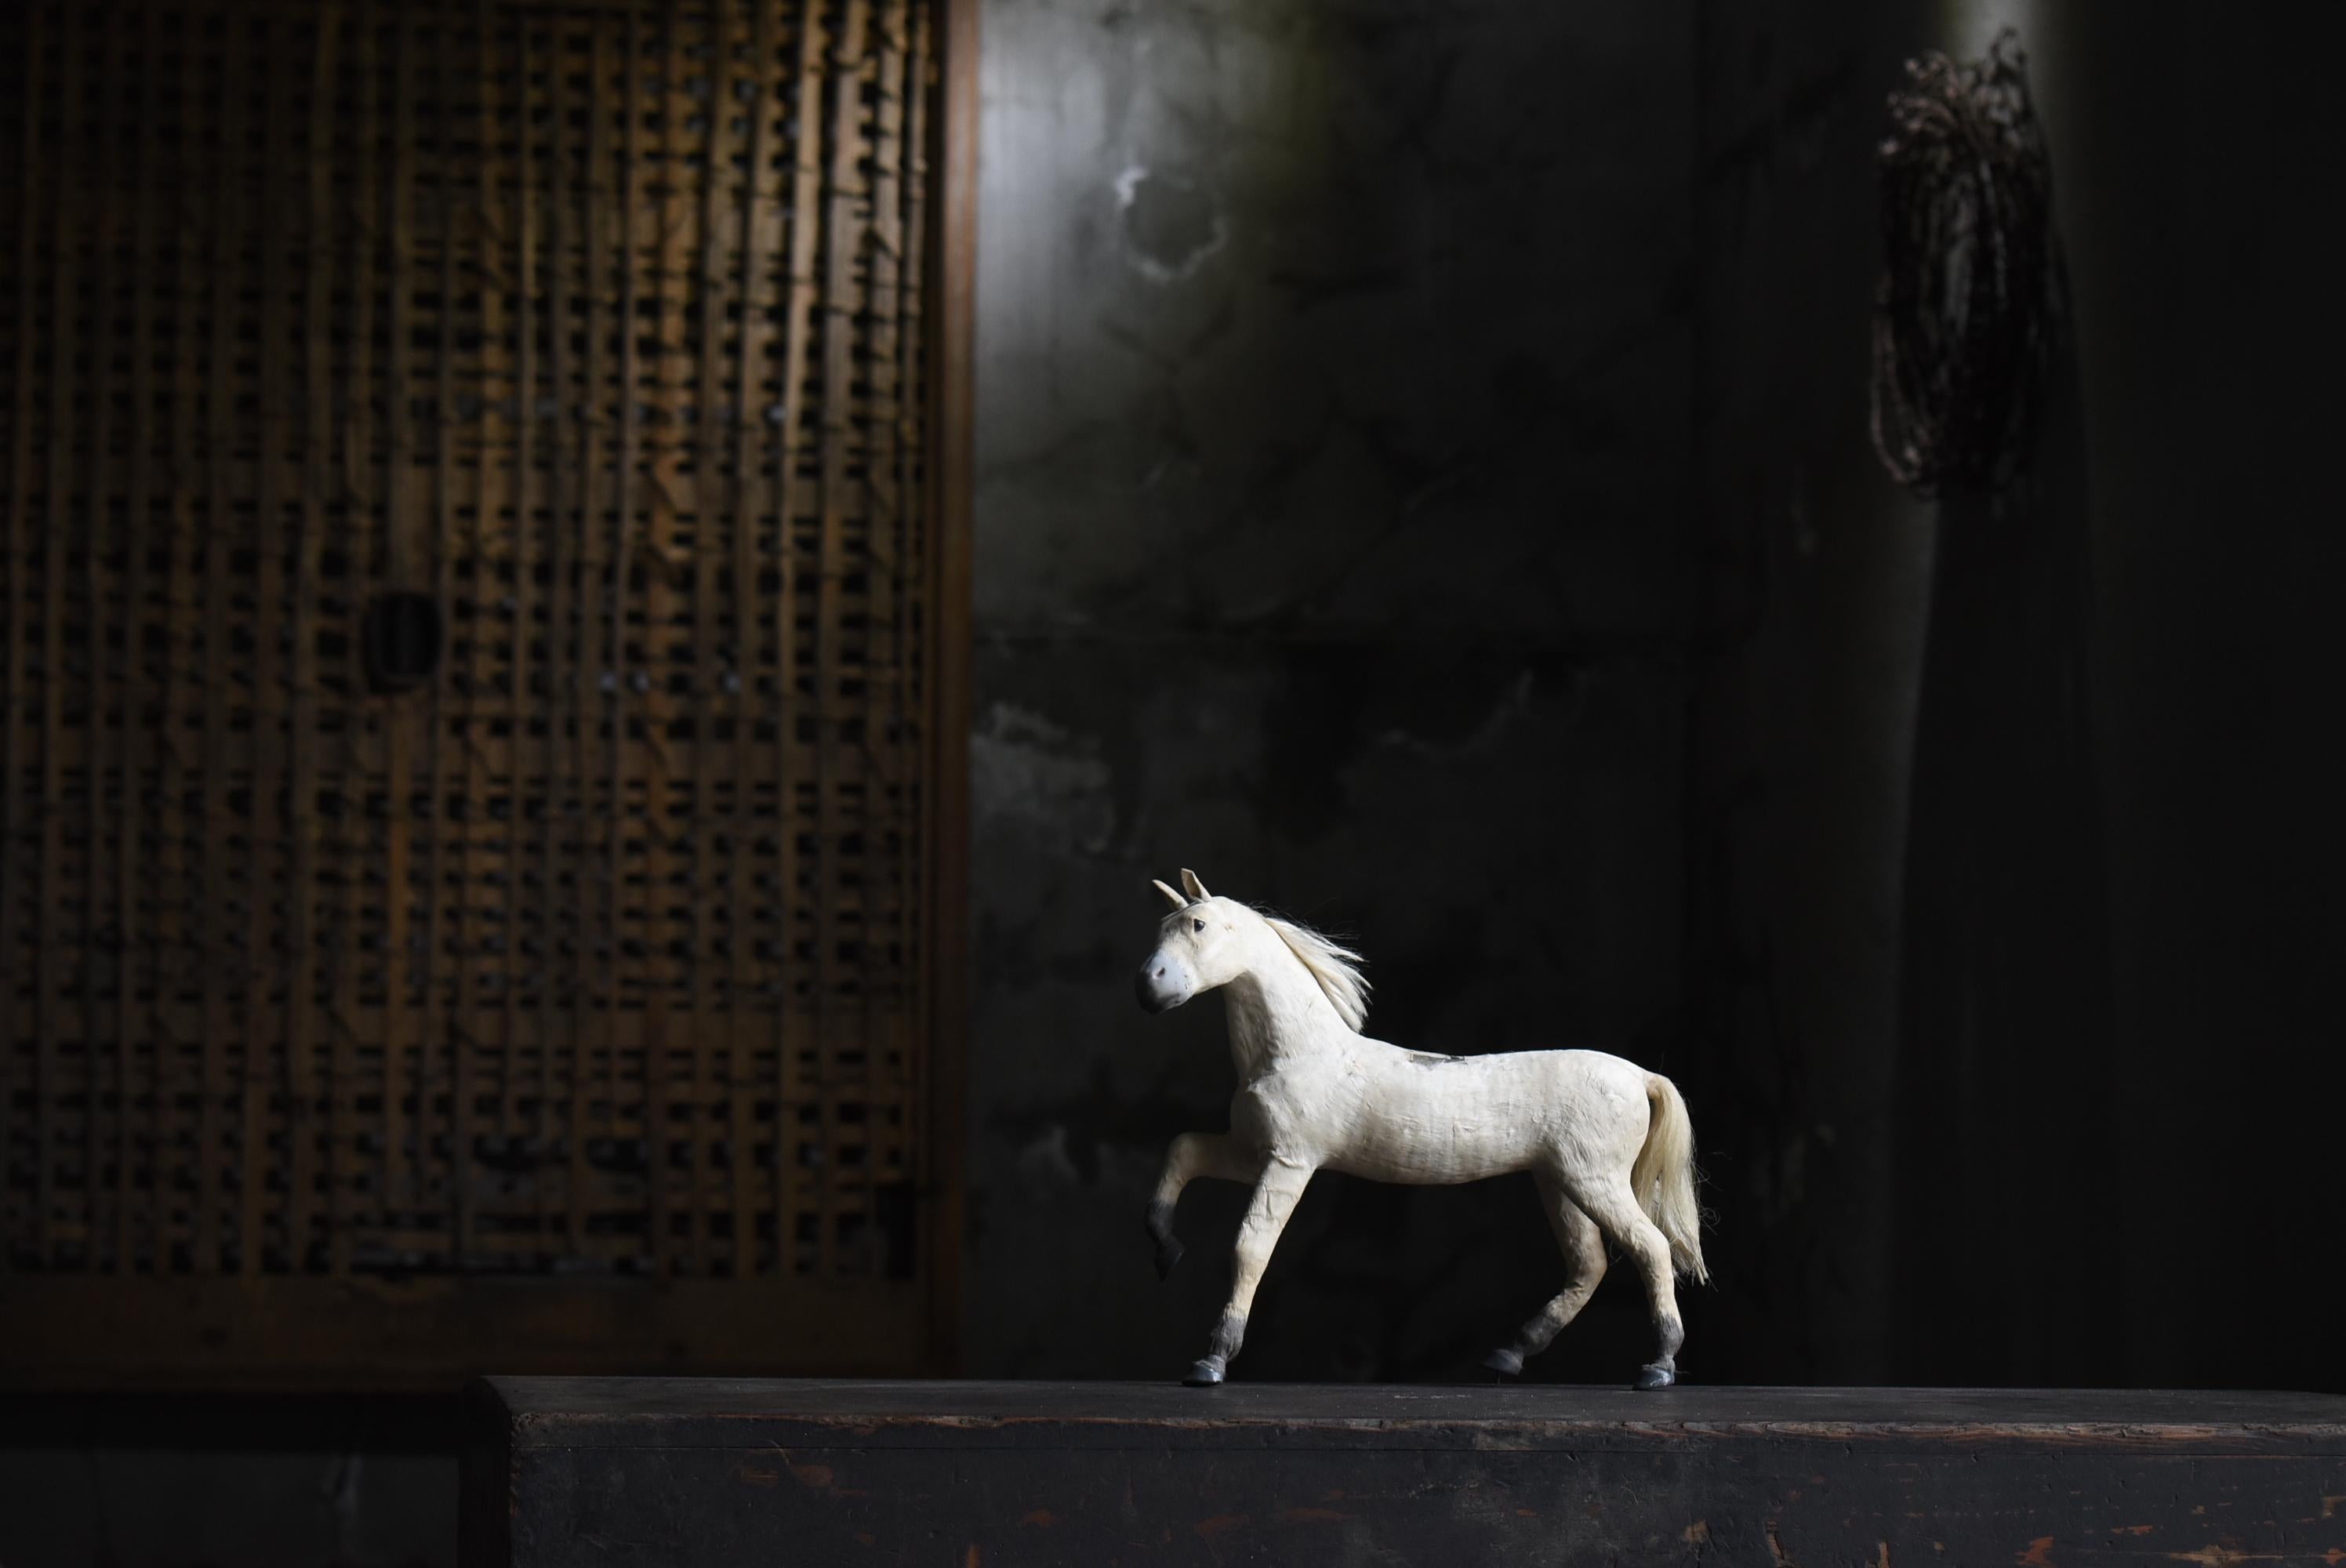 Dies ist eine alte japanische Pferdefigur.
Es wurde in der frühen Showa-Periode (1920er-1940er Jahre) hergestellt.

Es wird hauptsächlich aus Papier hergestellt. (Es werden verschiedene MATERIALs verwendet).

Es ist eine sehr aufwendige